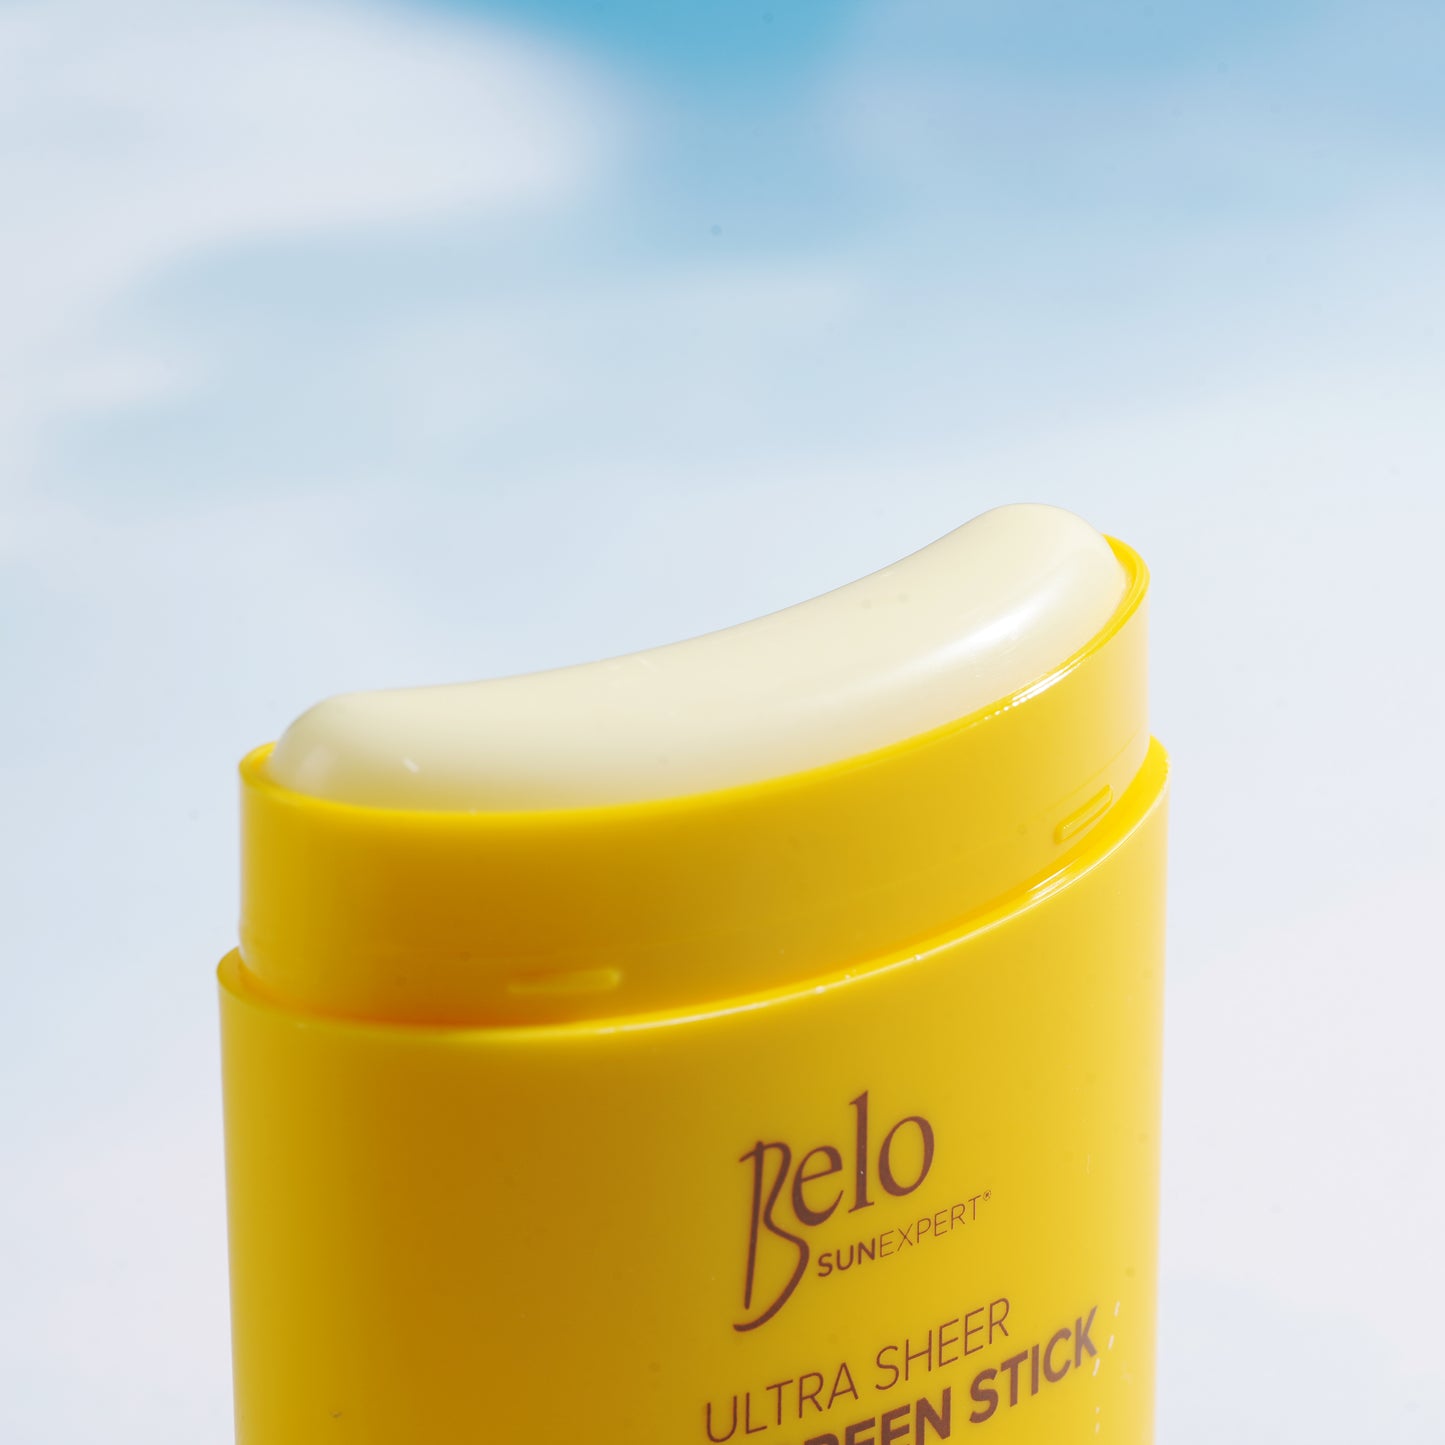 Belo SunExpert Ultra Sheer Suncreen Stick SPF 50+PA++++ - 23g